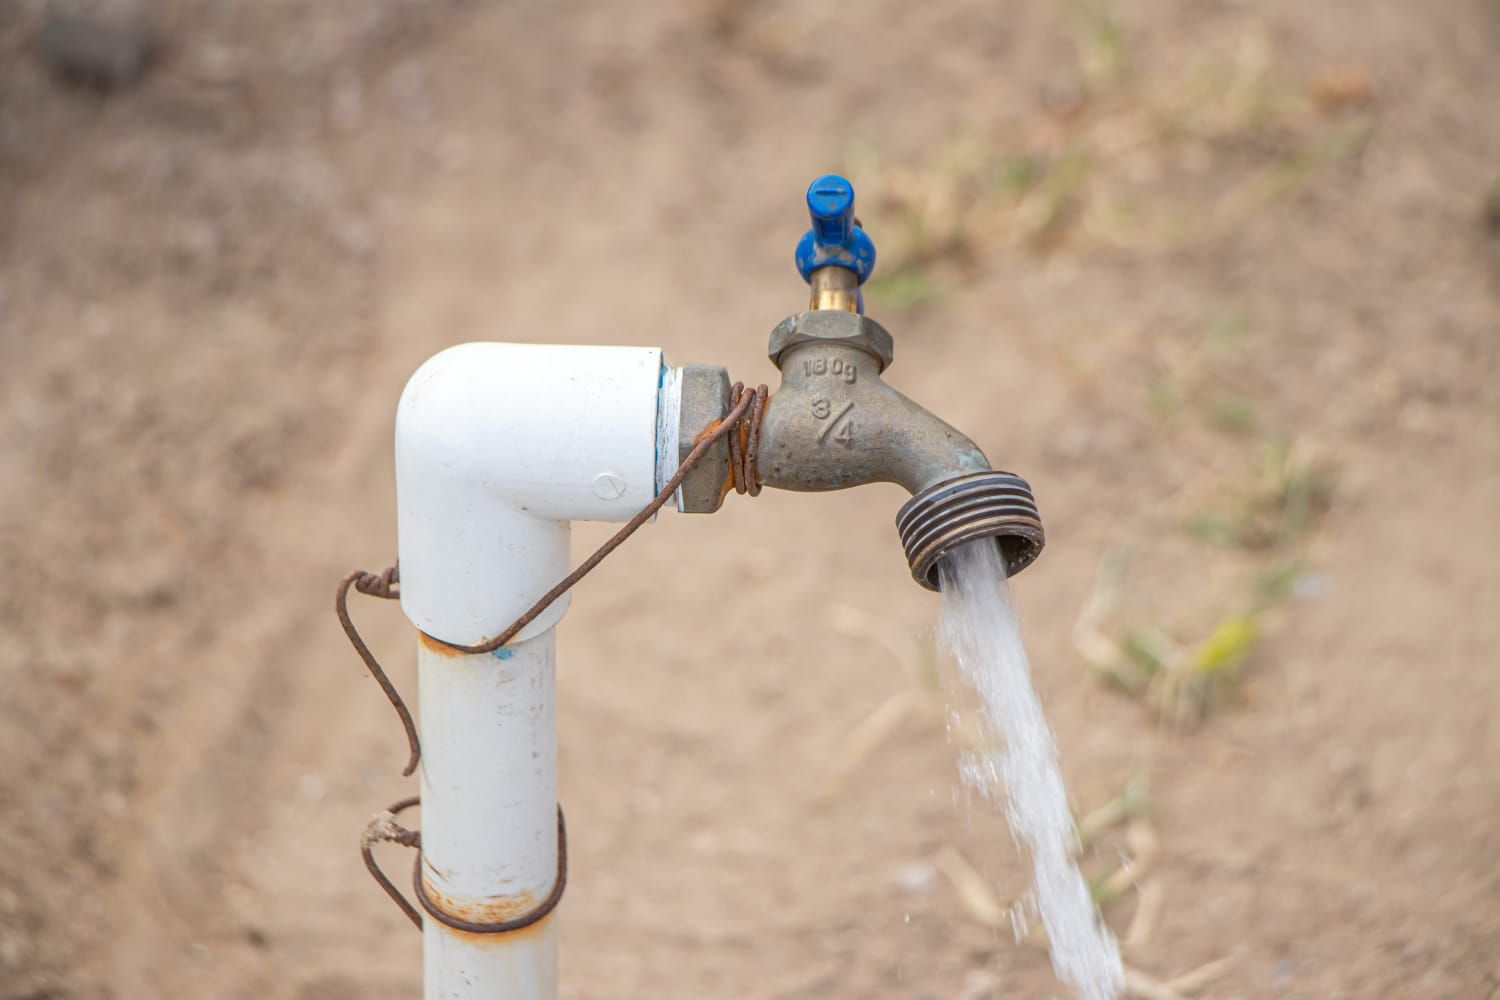 Suministradas 108 colonias con servicio de agua potable a través de la red, el 20 de agosto: OOMSAPAS La Paz